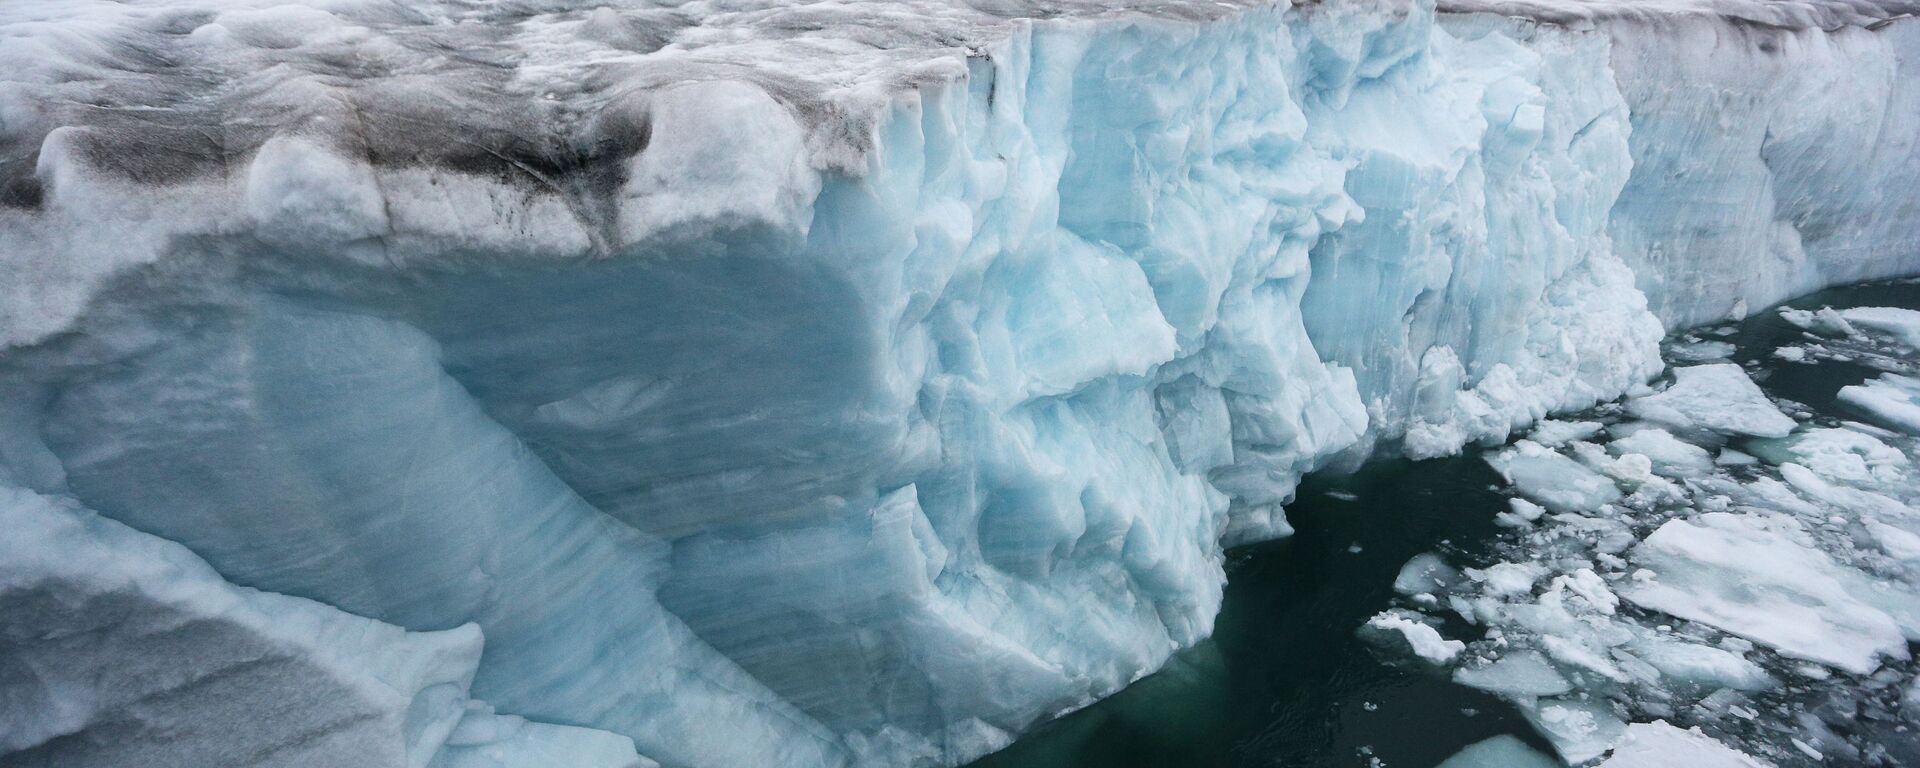 Ледник у острова Чампа архипелага Земля Франца-Иосиф - Sputnik Lietuva, 1920, 25.01.2021